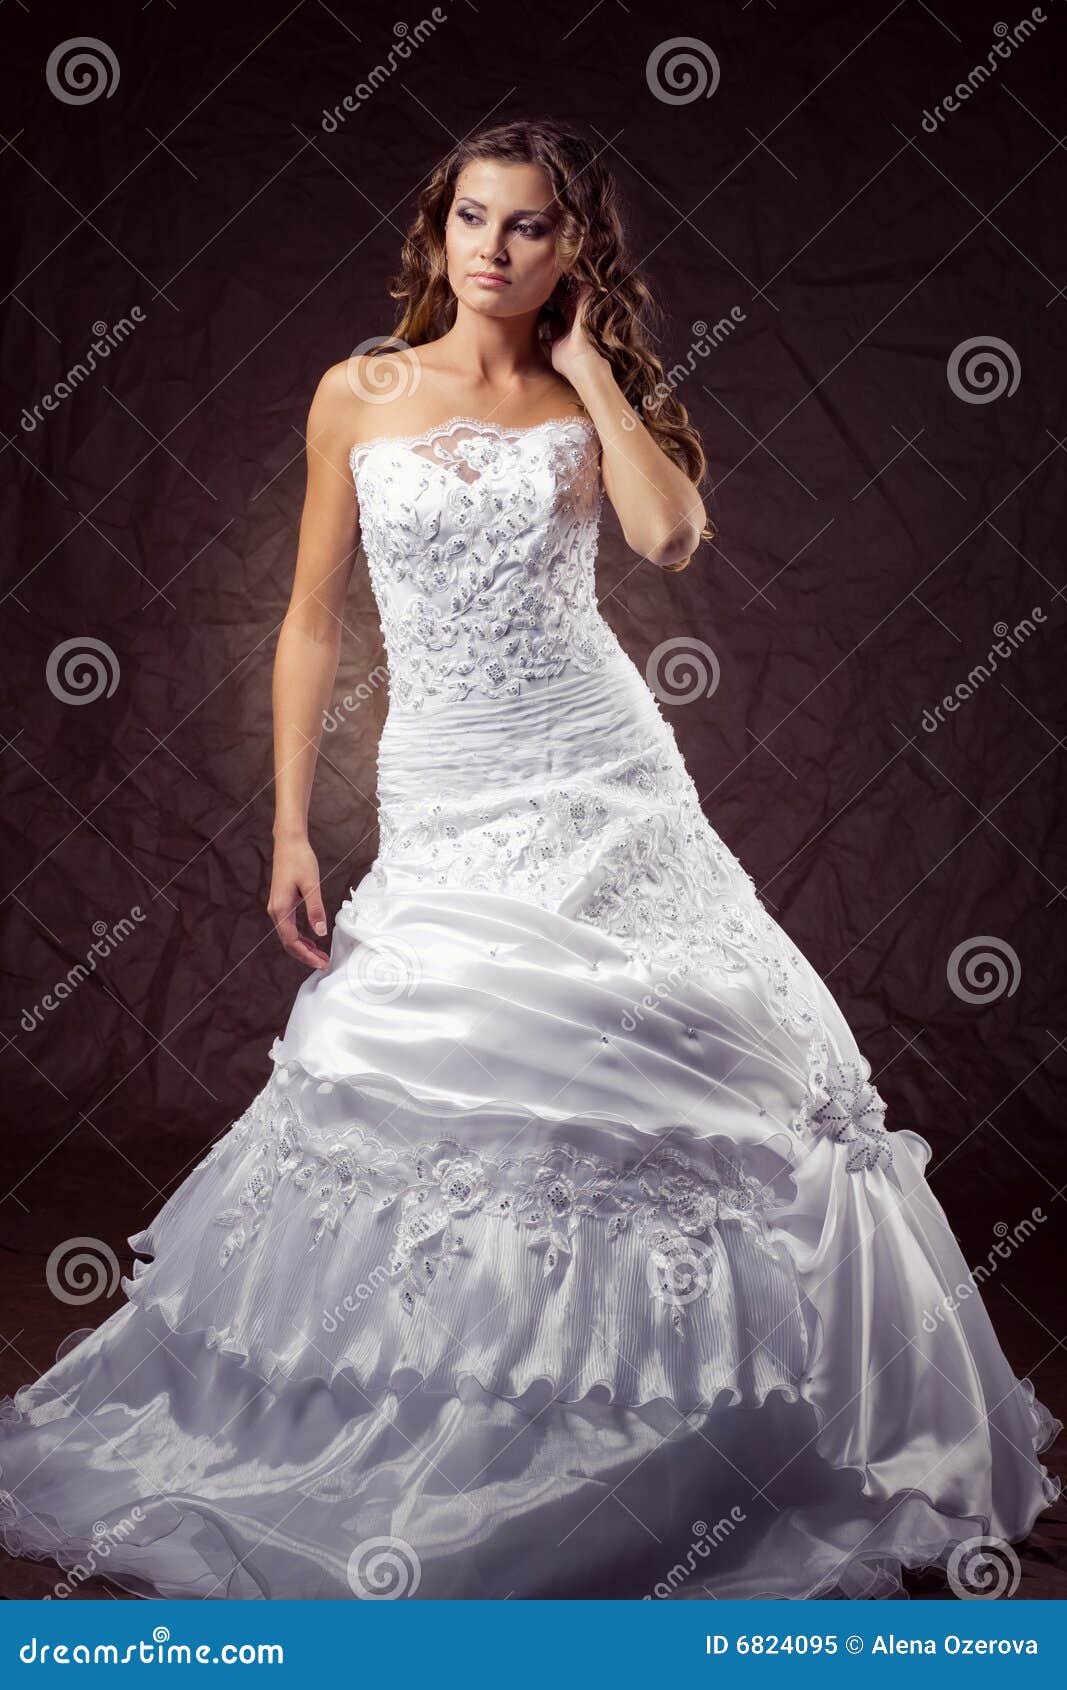 Fashion Model Wearing Wedding Dress Stock Image - Image of 